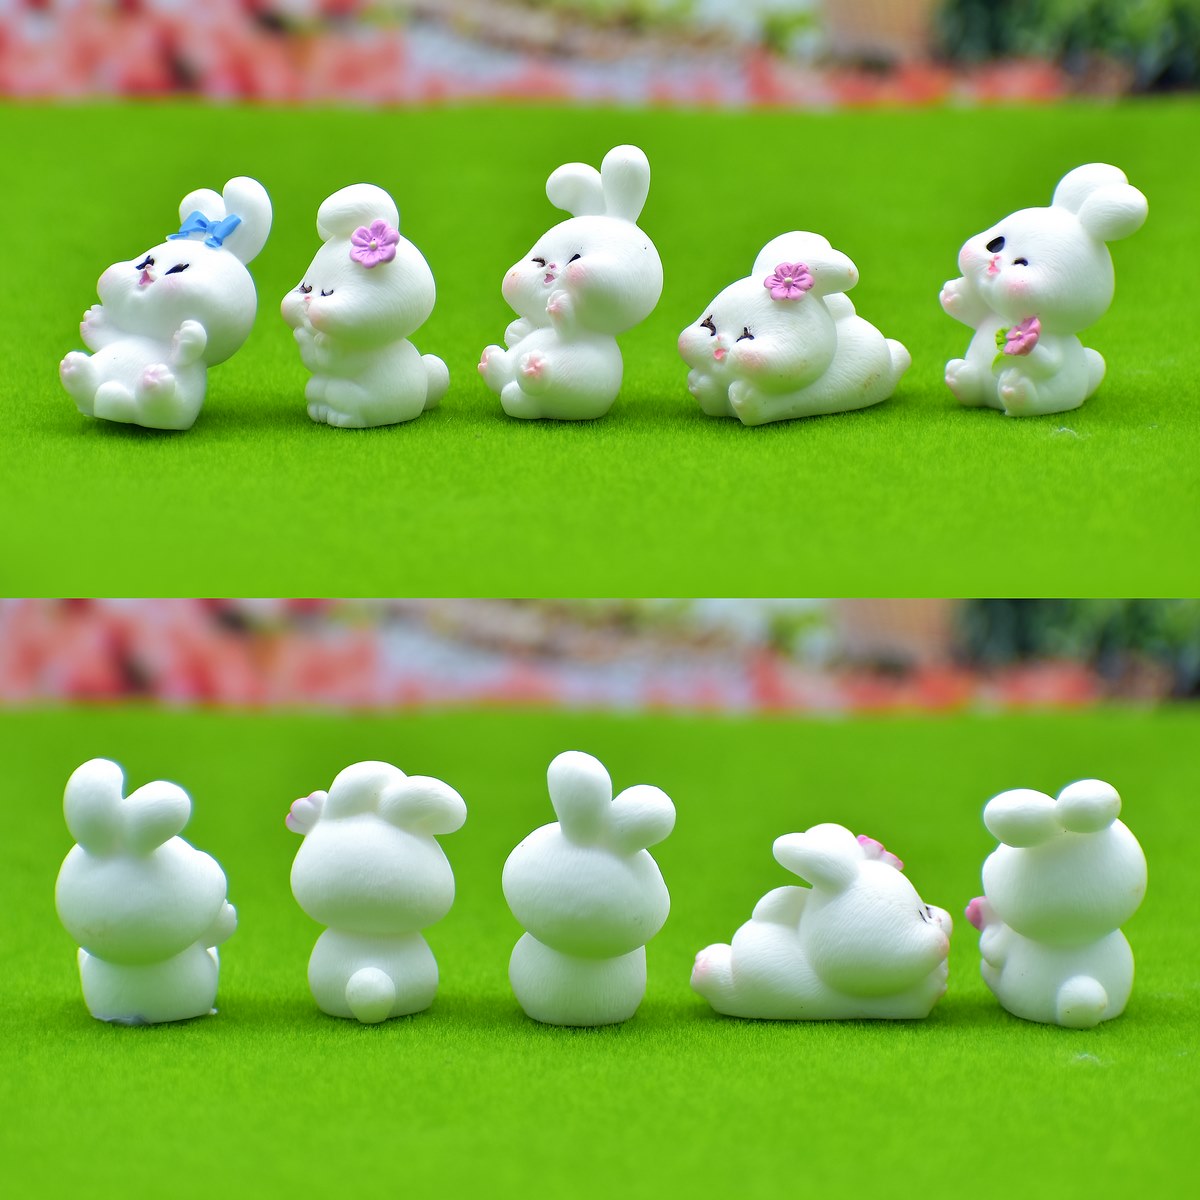 jags-mumbai Miniature Miniature Model Rabbit White 5Pcs